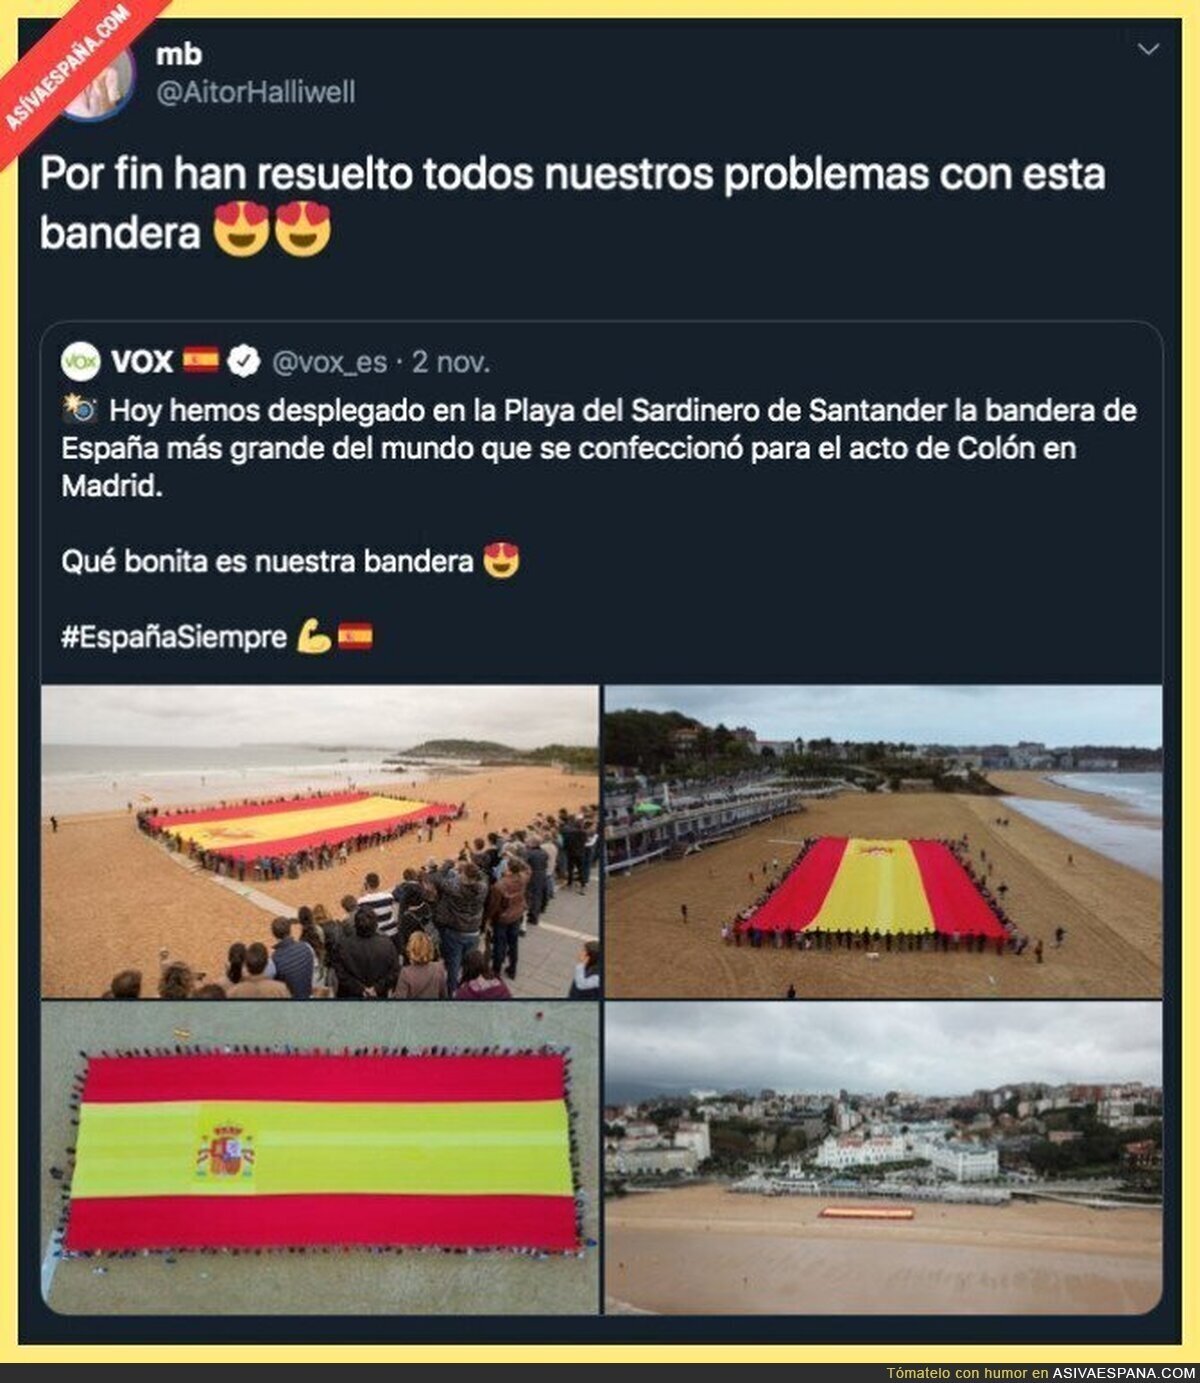 VOX sabe bien como arreglar los problemas de España